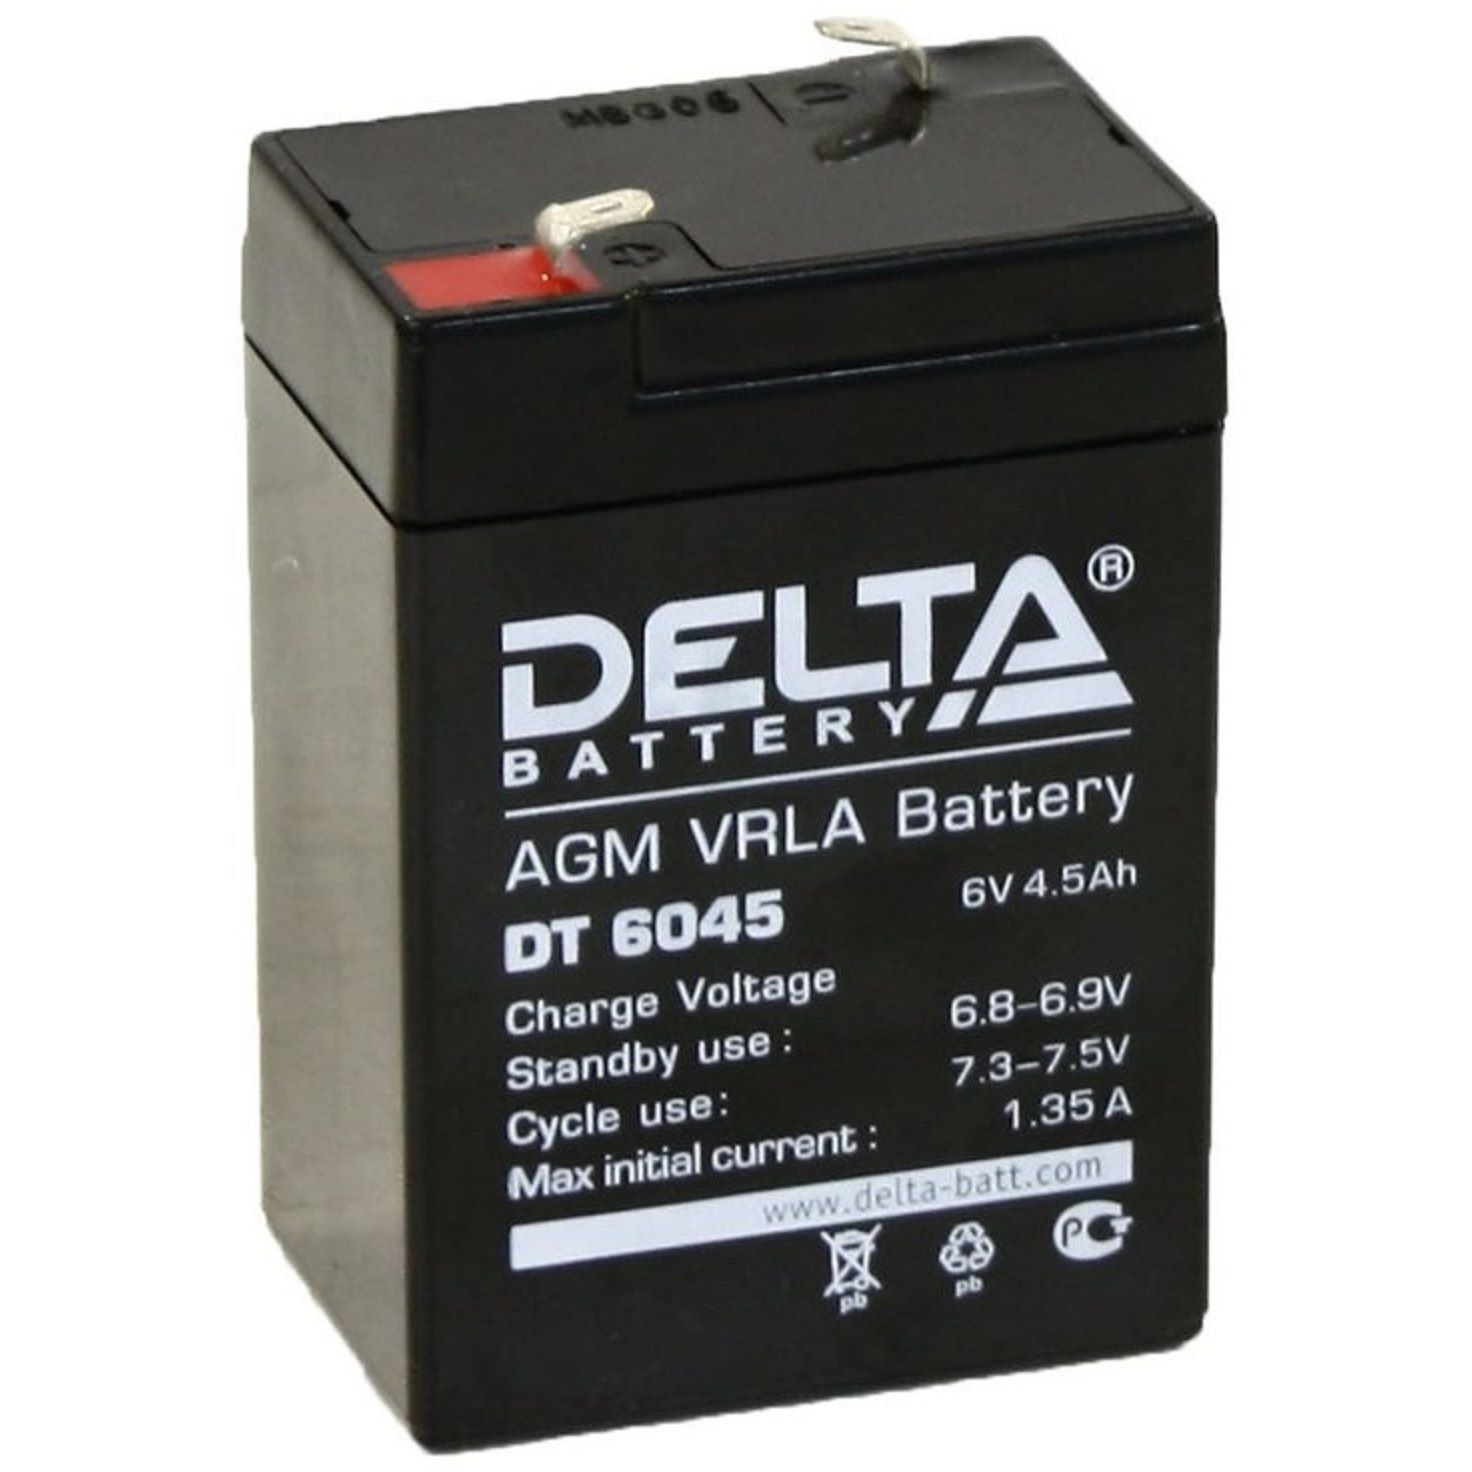 Аккумулятор 06. Аккумулятор Delta 6v 4.5Ah. DT 4045 Delta аккумуляторная батарея. Delta DT 6045 (6v / 4.5Ah). Аккумуляторная батарея Delta DT 6045.